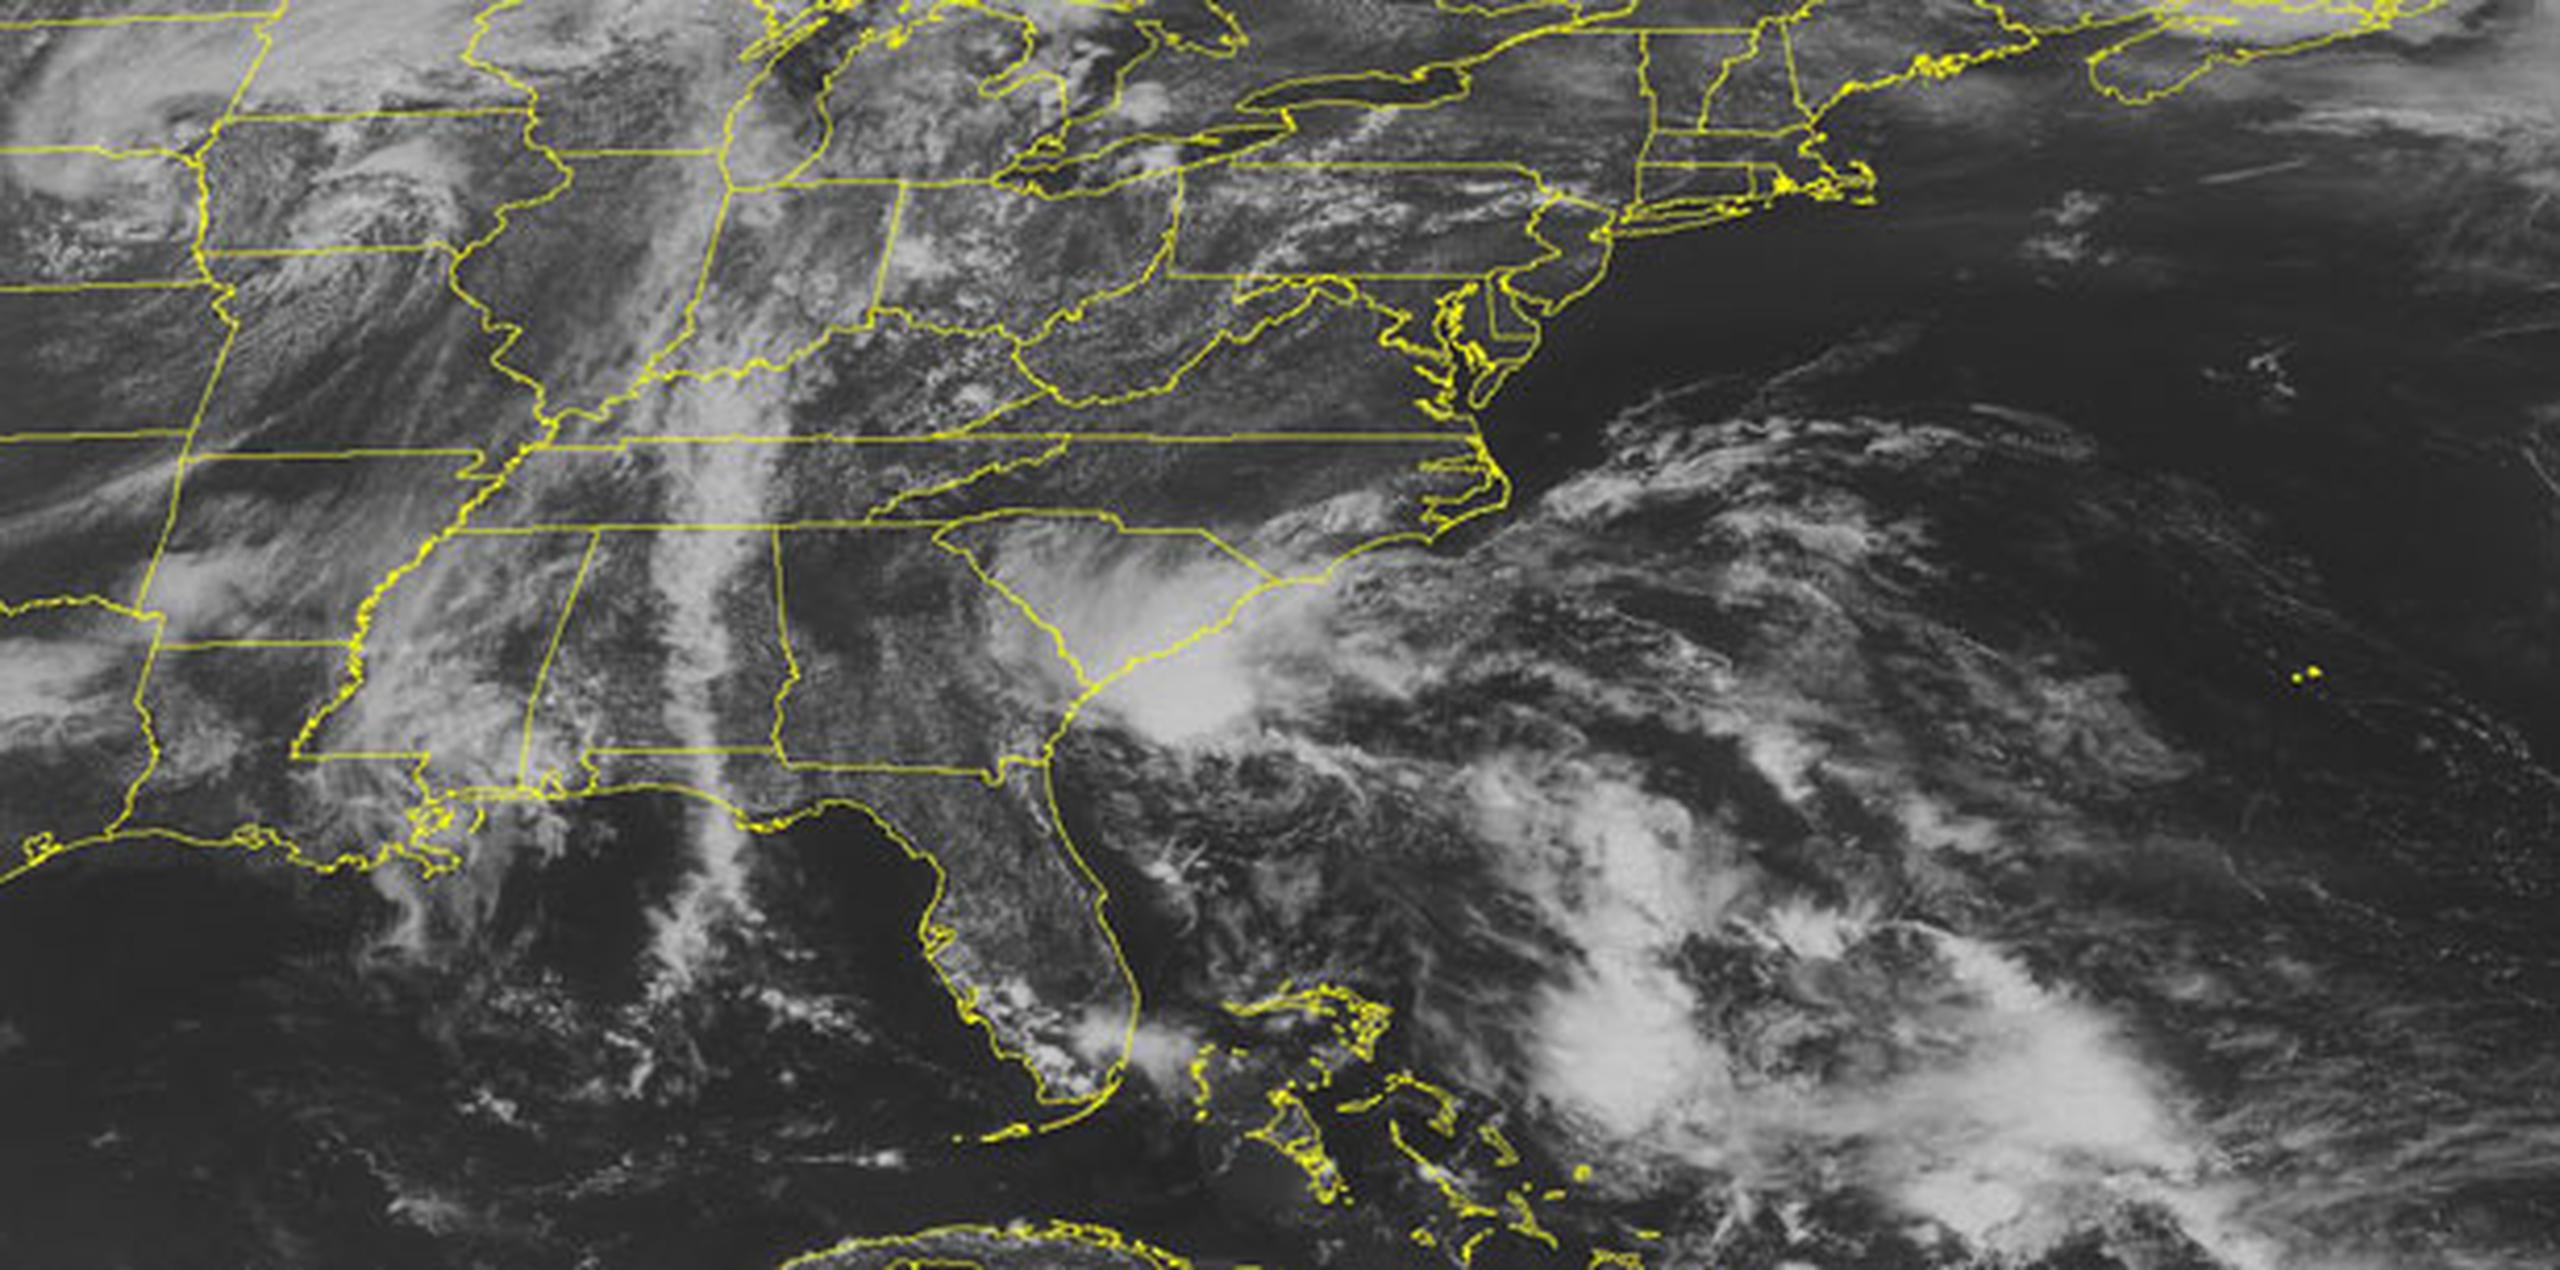 La tormenta tropical Bonnie se localiza a 120 millas al sureste de Beaufort y a 125 millas al sur-sureste de Charleston, ambas en Carolina del Sur, estado en cuyas costas ya se registran fuertes lluvias. (AP)